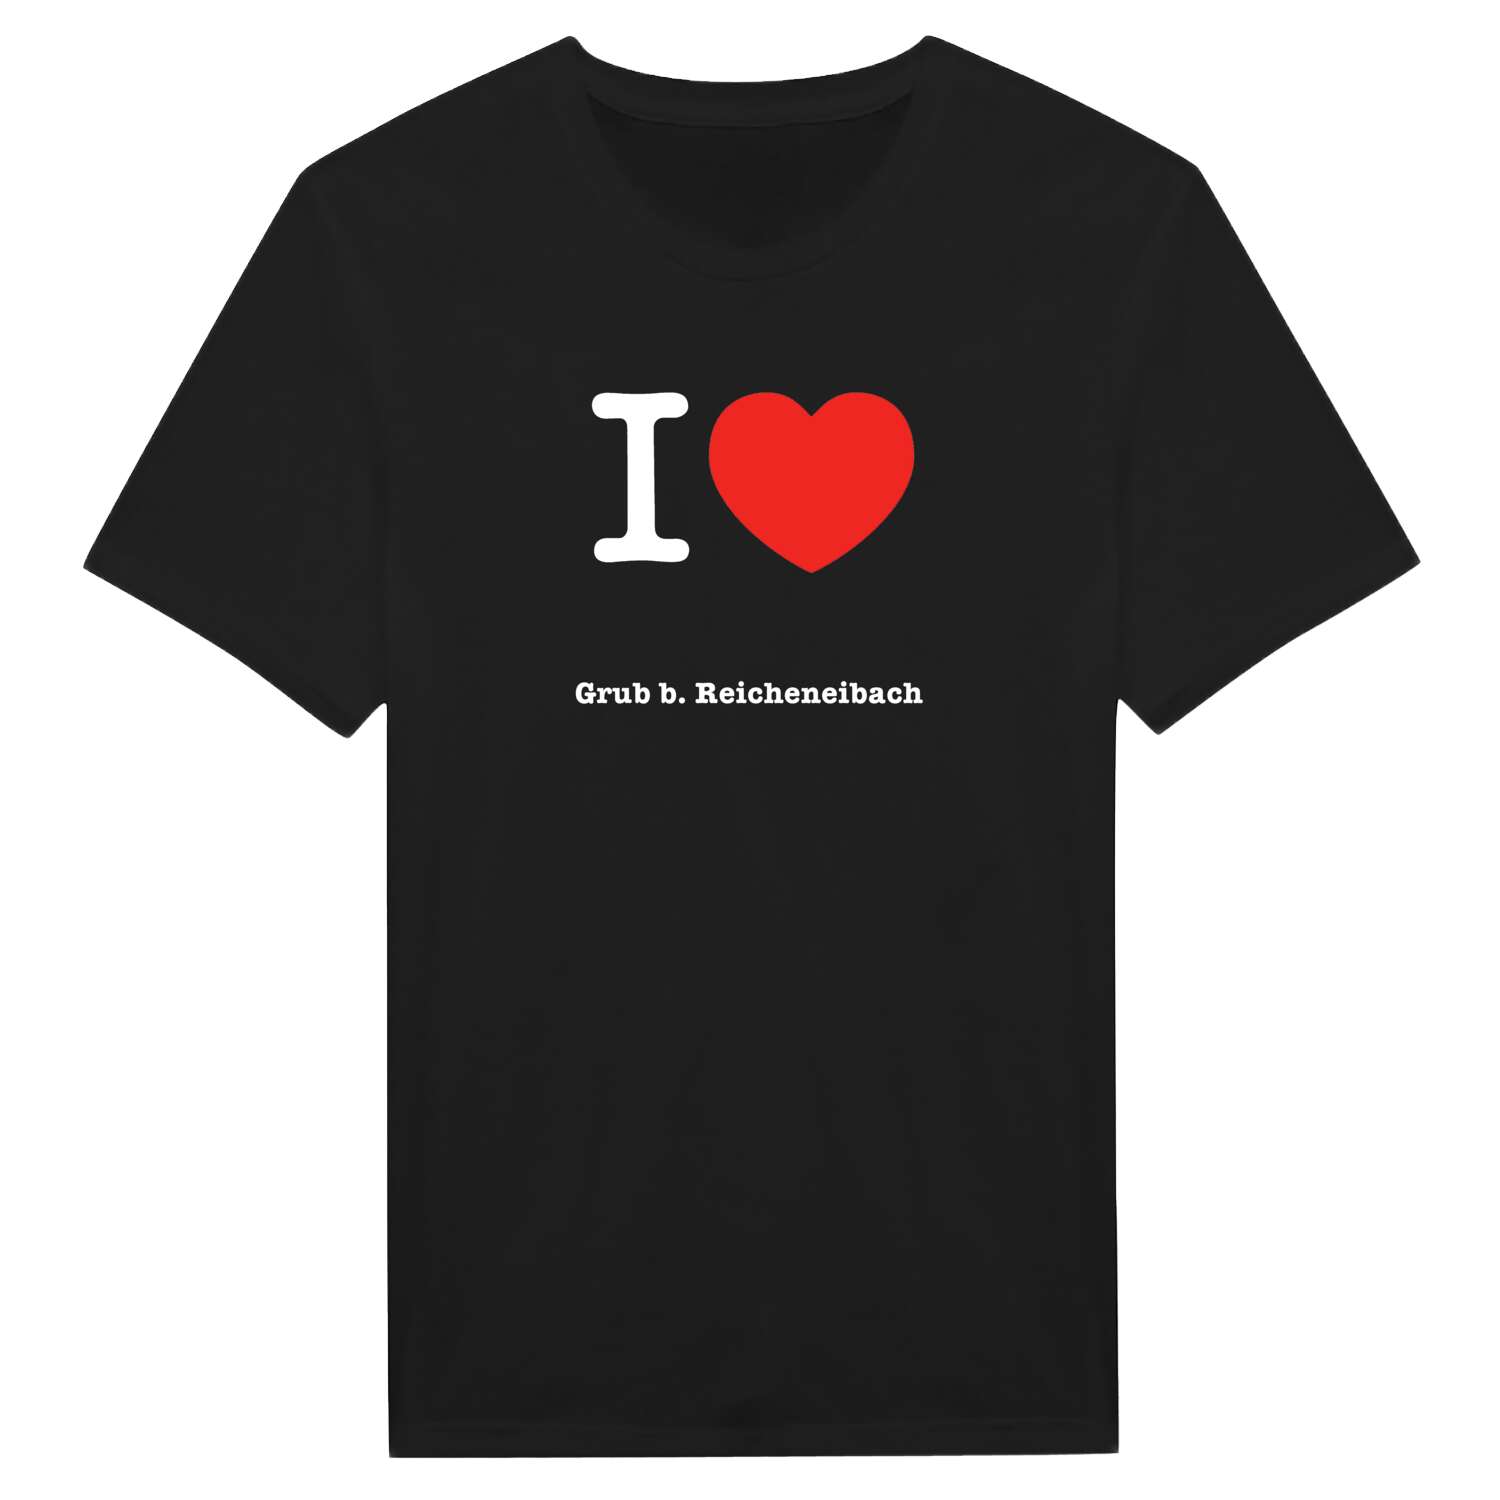 Grub b. Reicheneibach T-Shirt »I love«